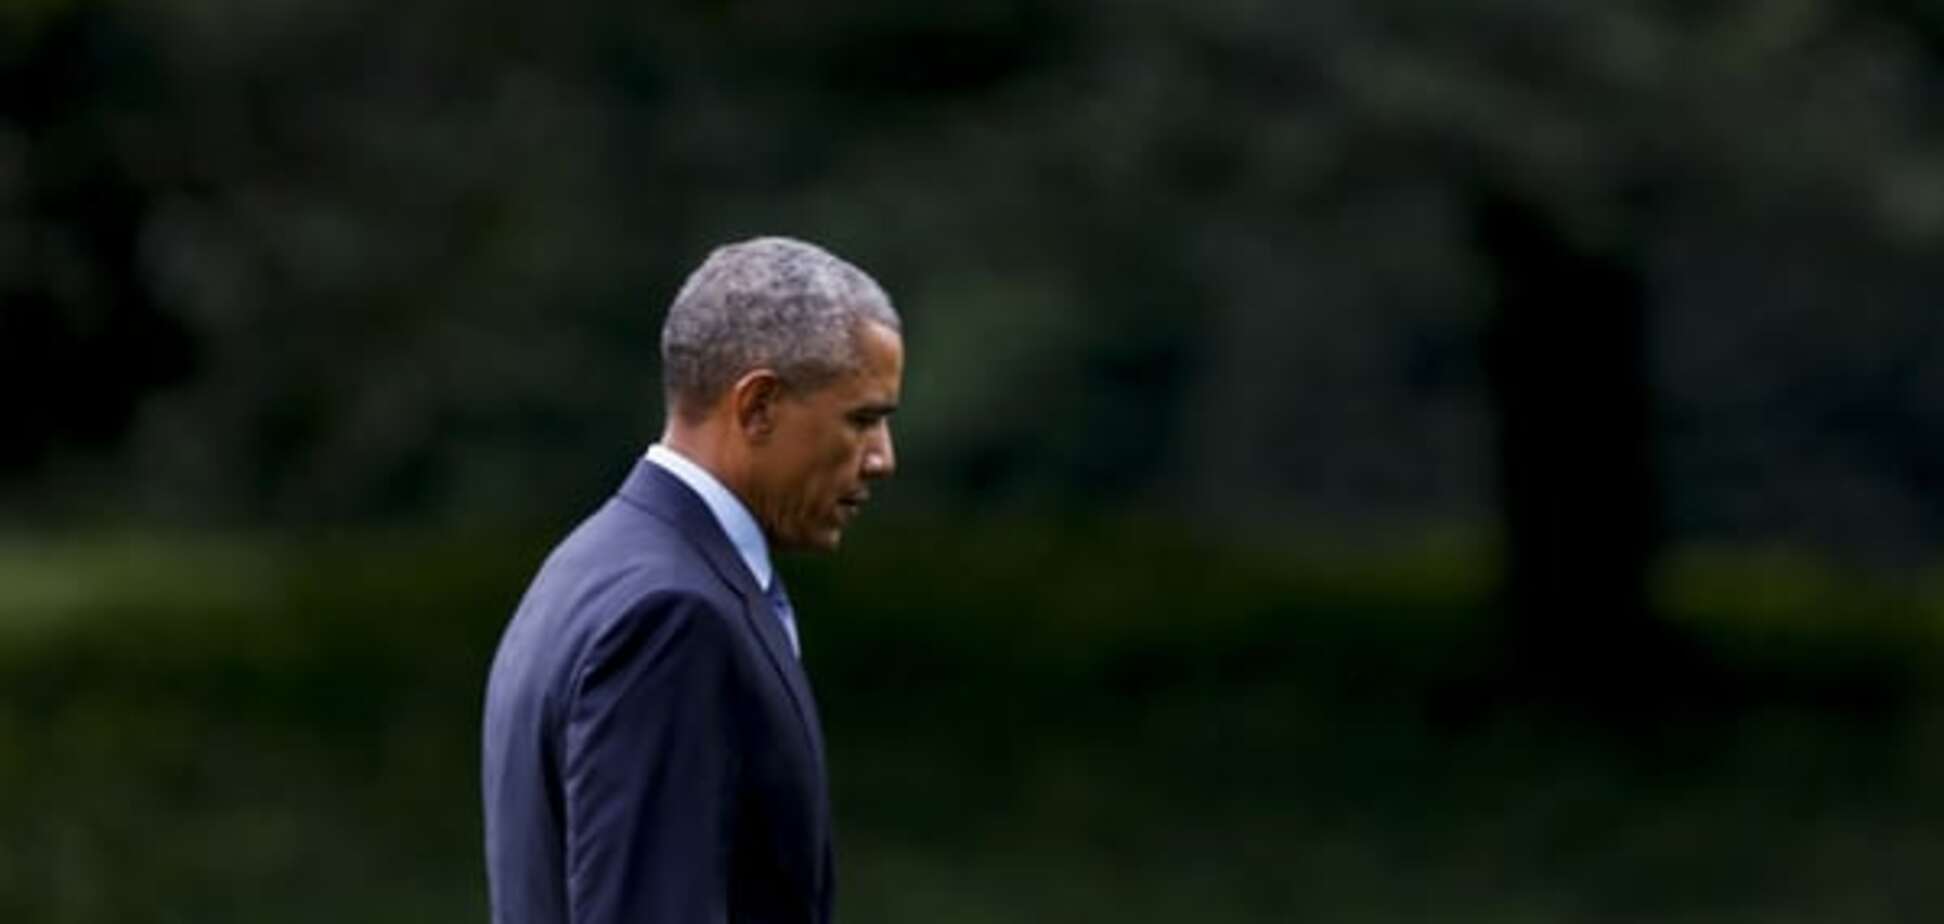 ЗМІ: Обама екстрено зібрав Раду нацбезпеки через Росію